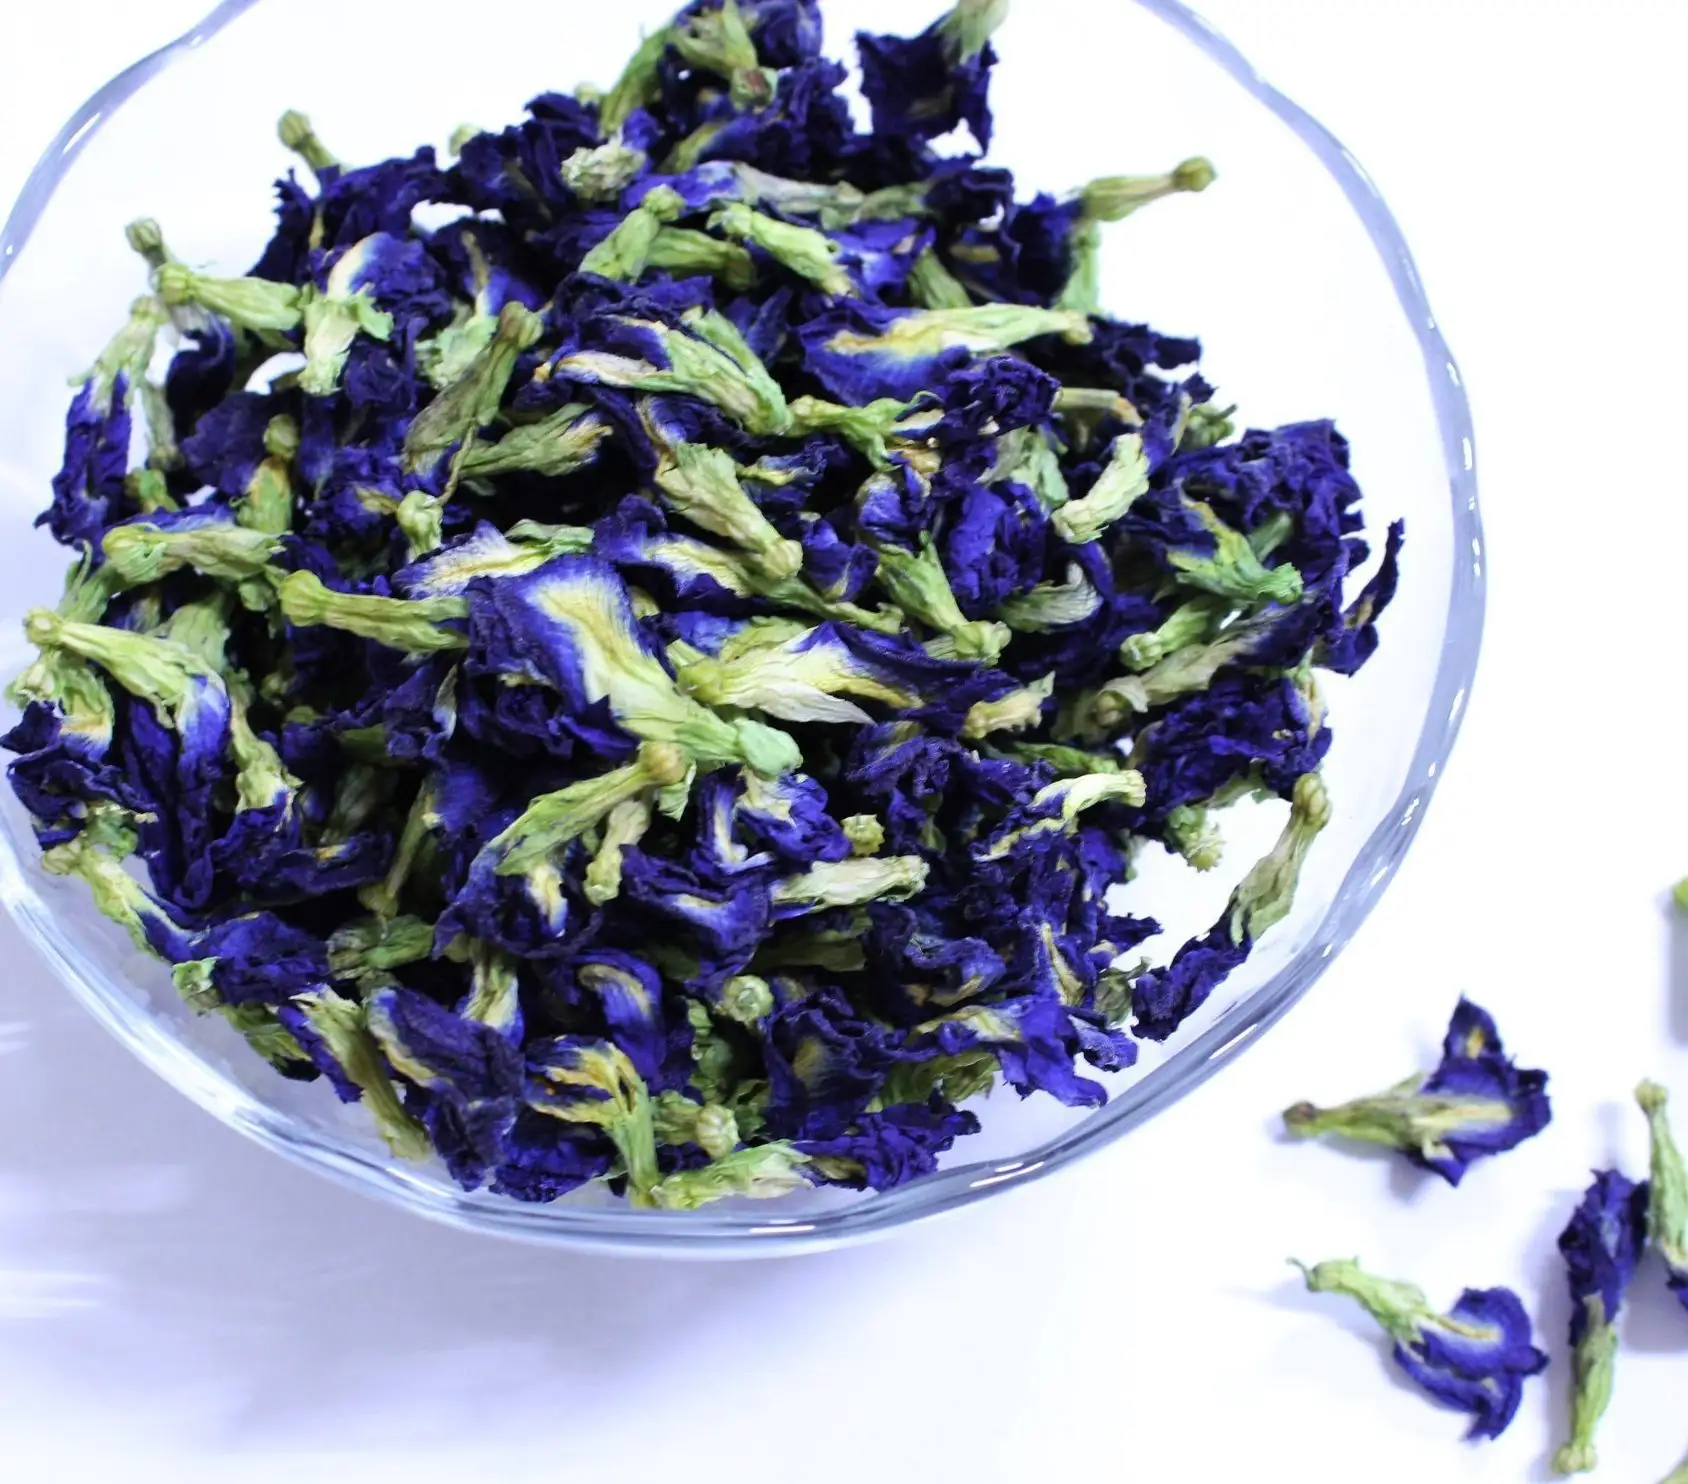 Pigmento Natural de flores secas, troquel de té de hierbas Dou Hua, etiquetado privado, té de flores de guisante de mariposa azul orgánico